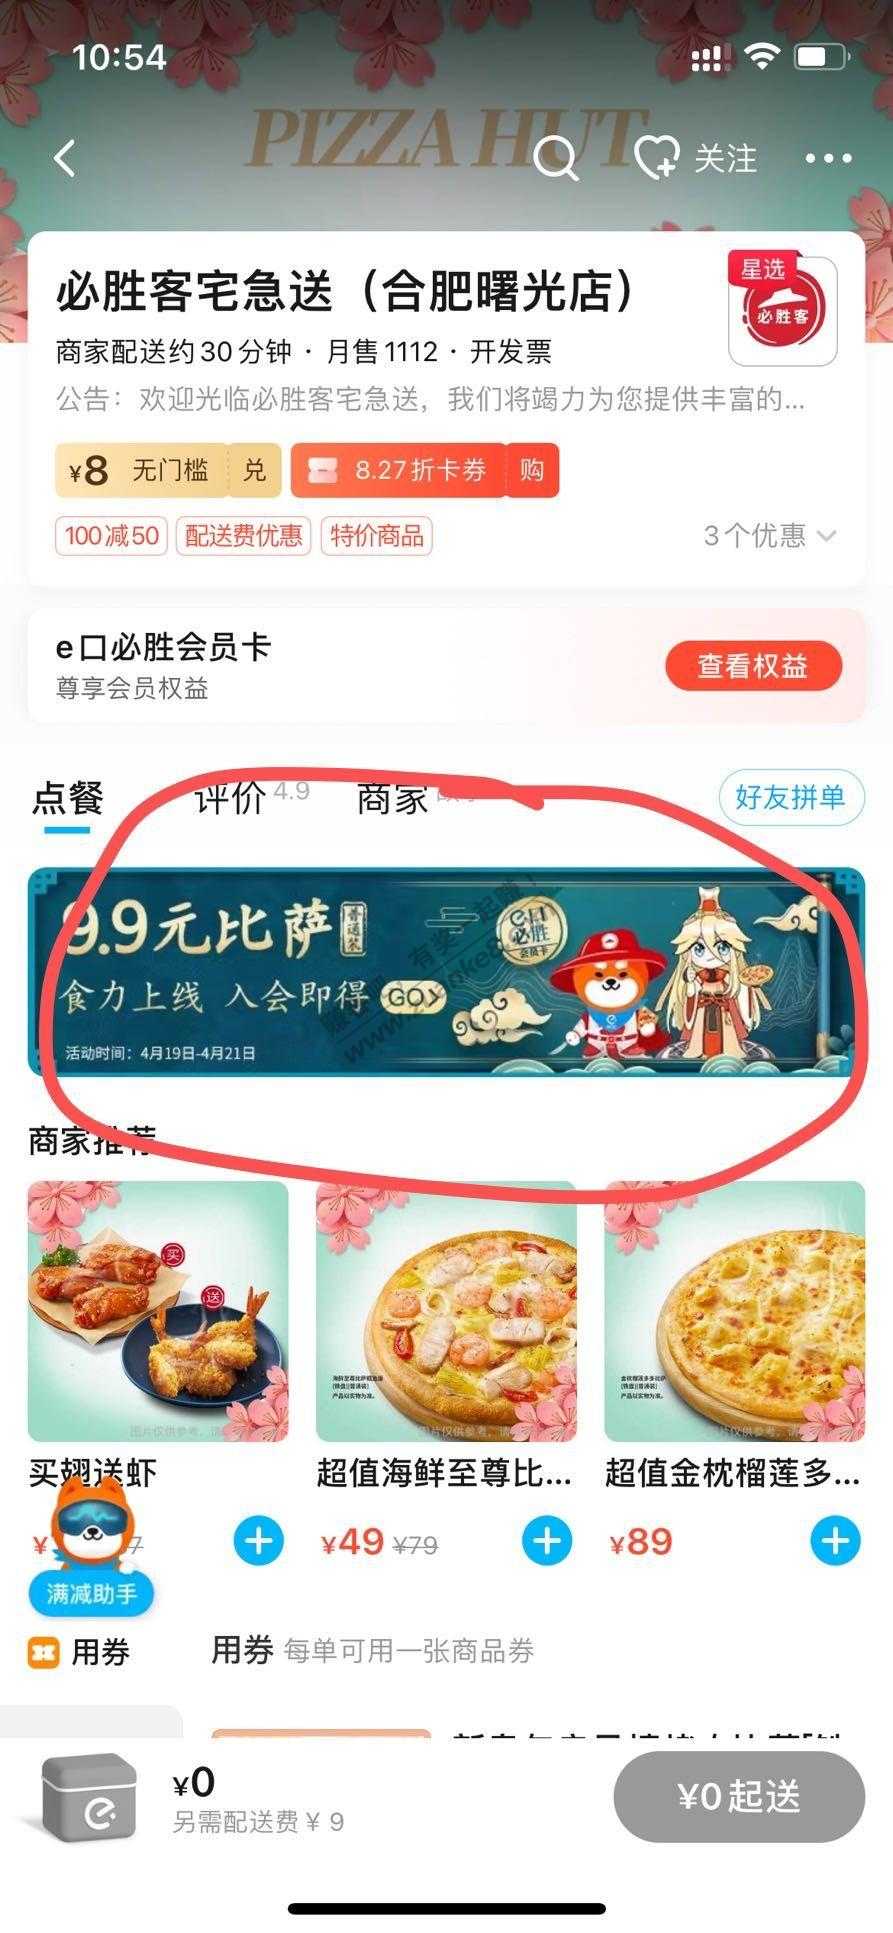 速度饿了么必胜客9.9披萨-新客7.4到手-惠小助(52huixz.com)